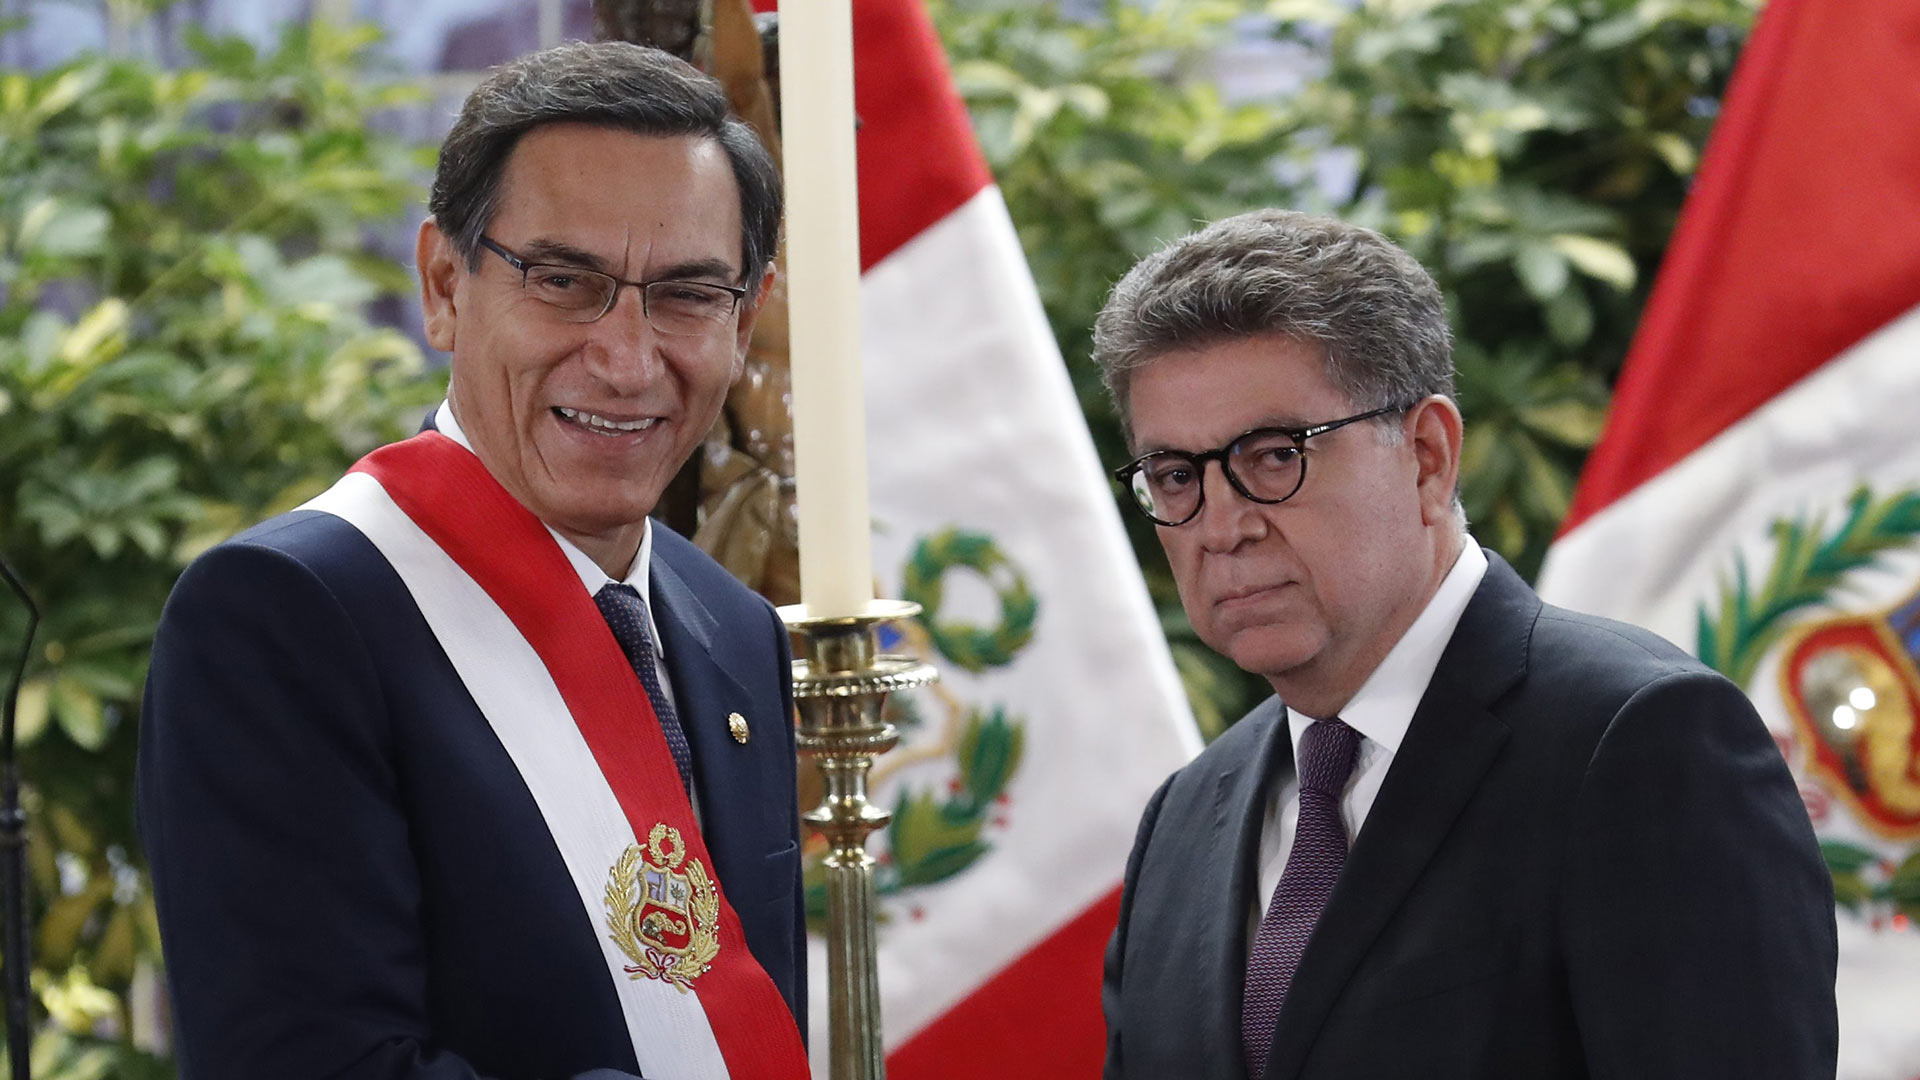 El presidente peruano designa nuevos ministros, entre ellos un fujimorista disidente